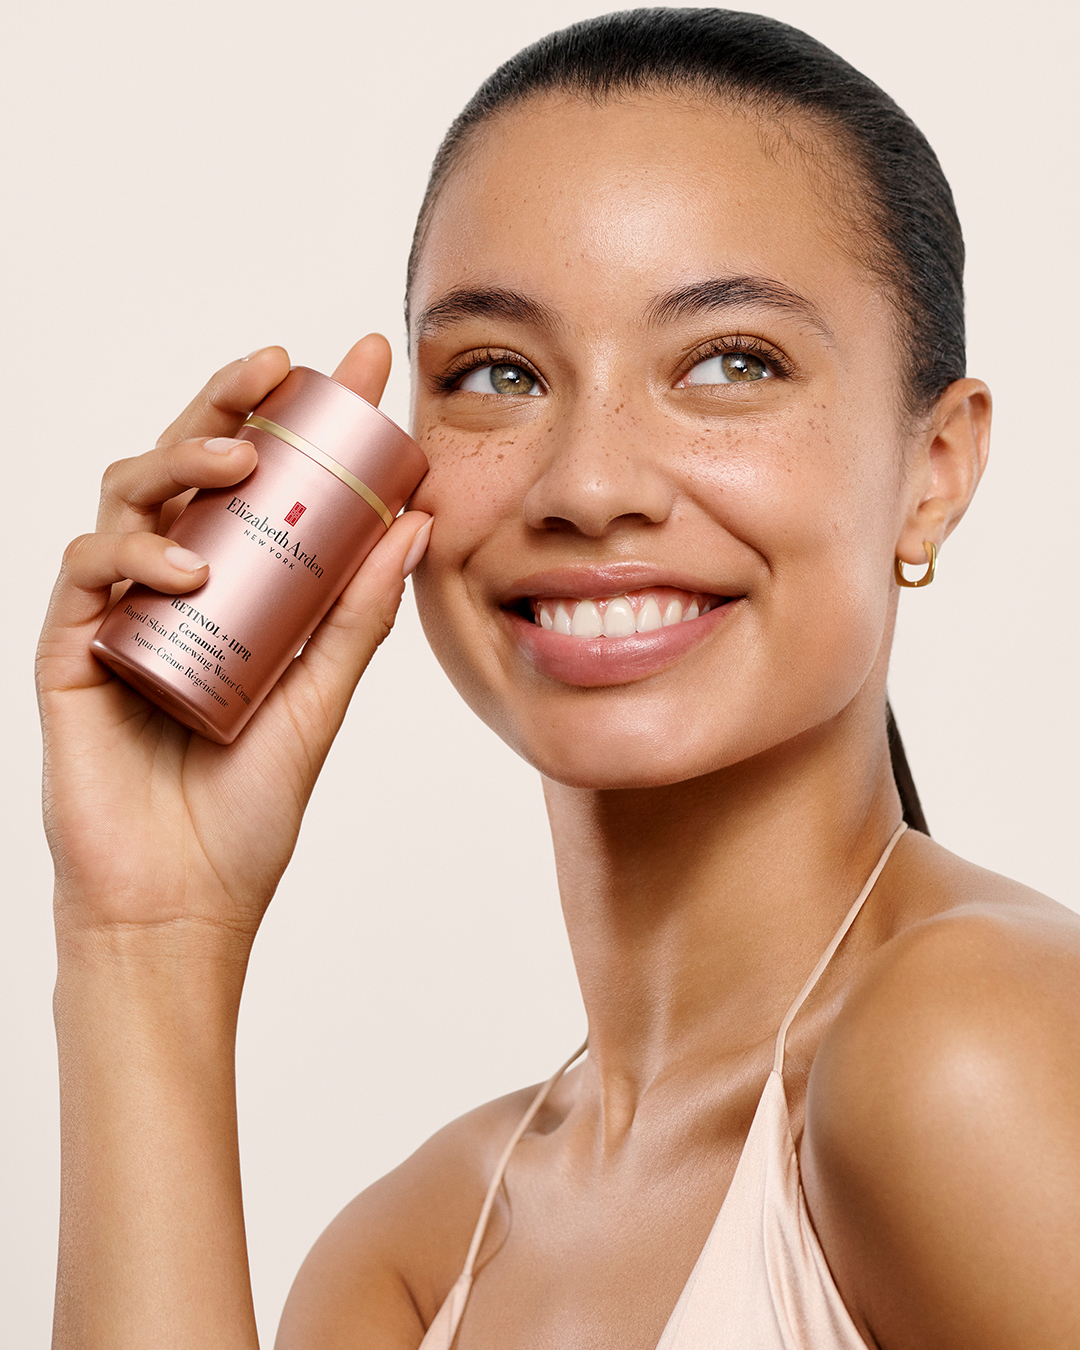 Esta crema con Retinol de Alta Eficacia reduce las arrugas definitivamente (el 100% de las mujeres lo confirma)